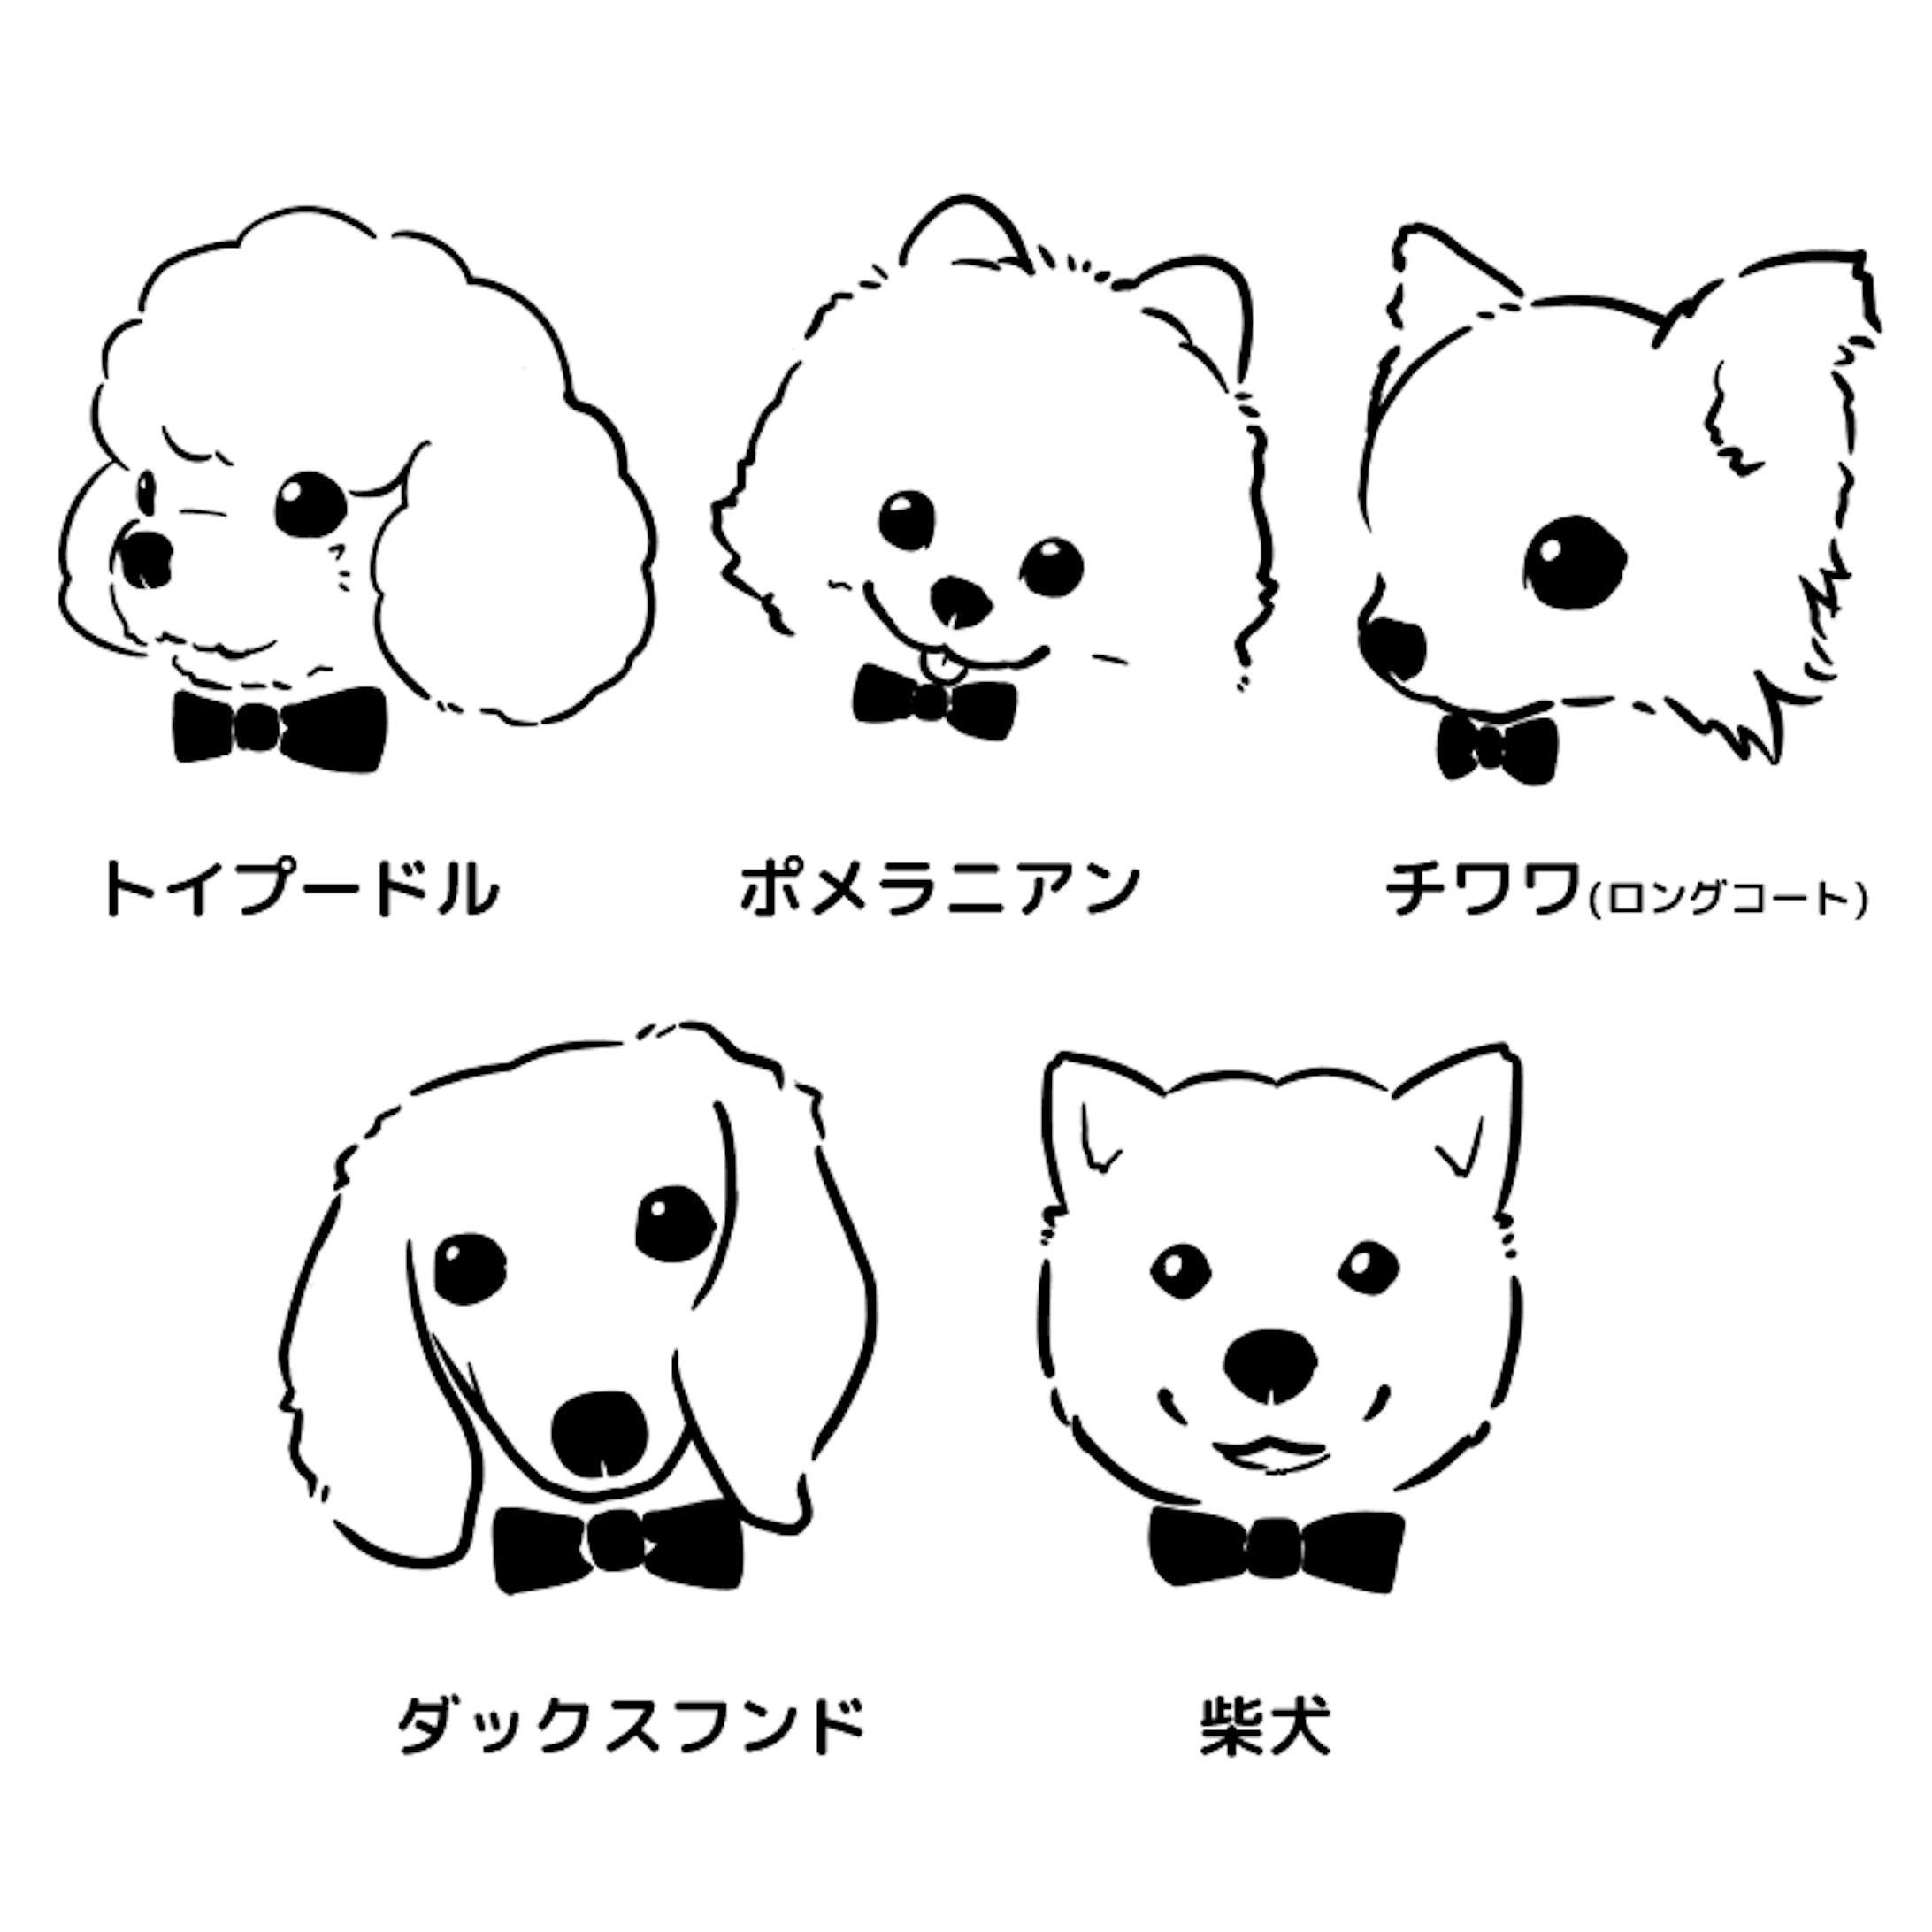 トートバックに刺繍する犬のイラスト 5犬種